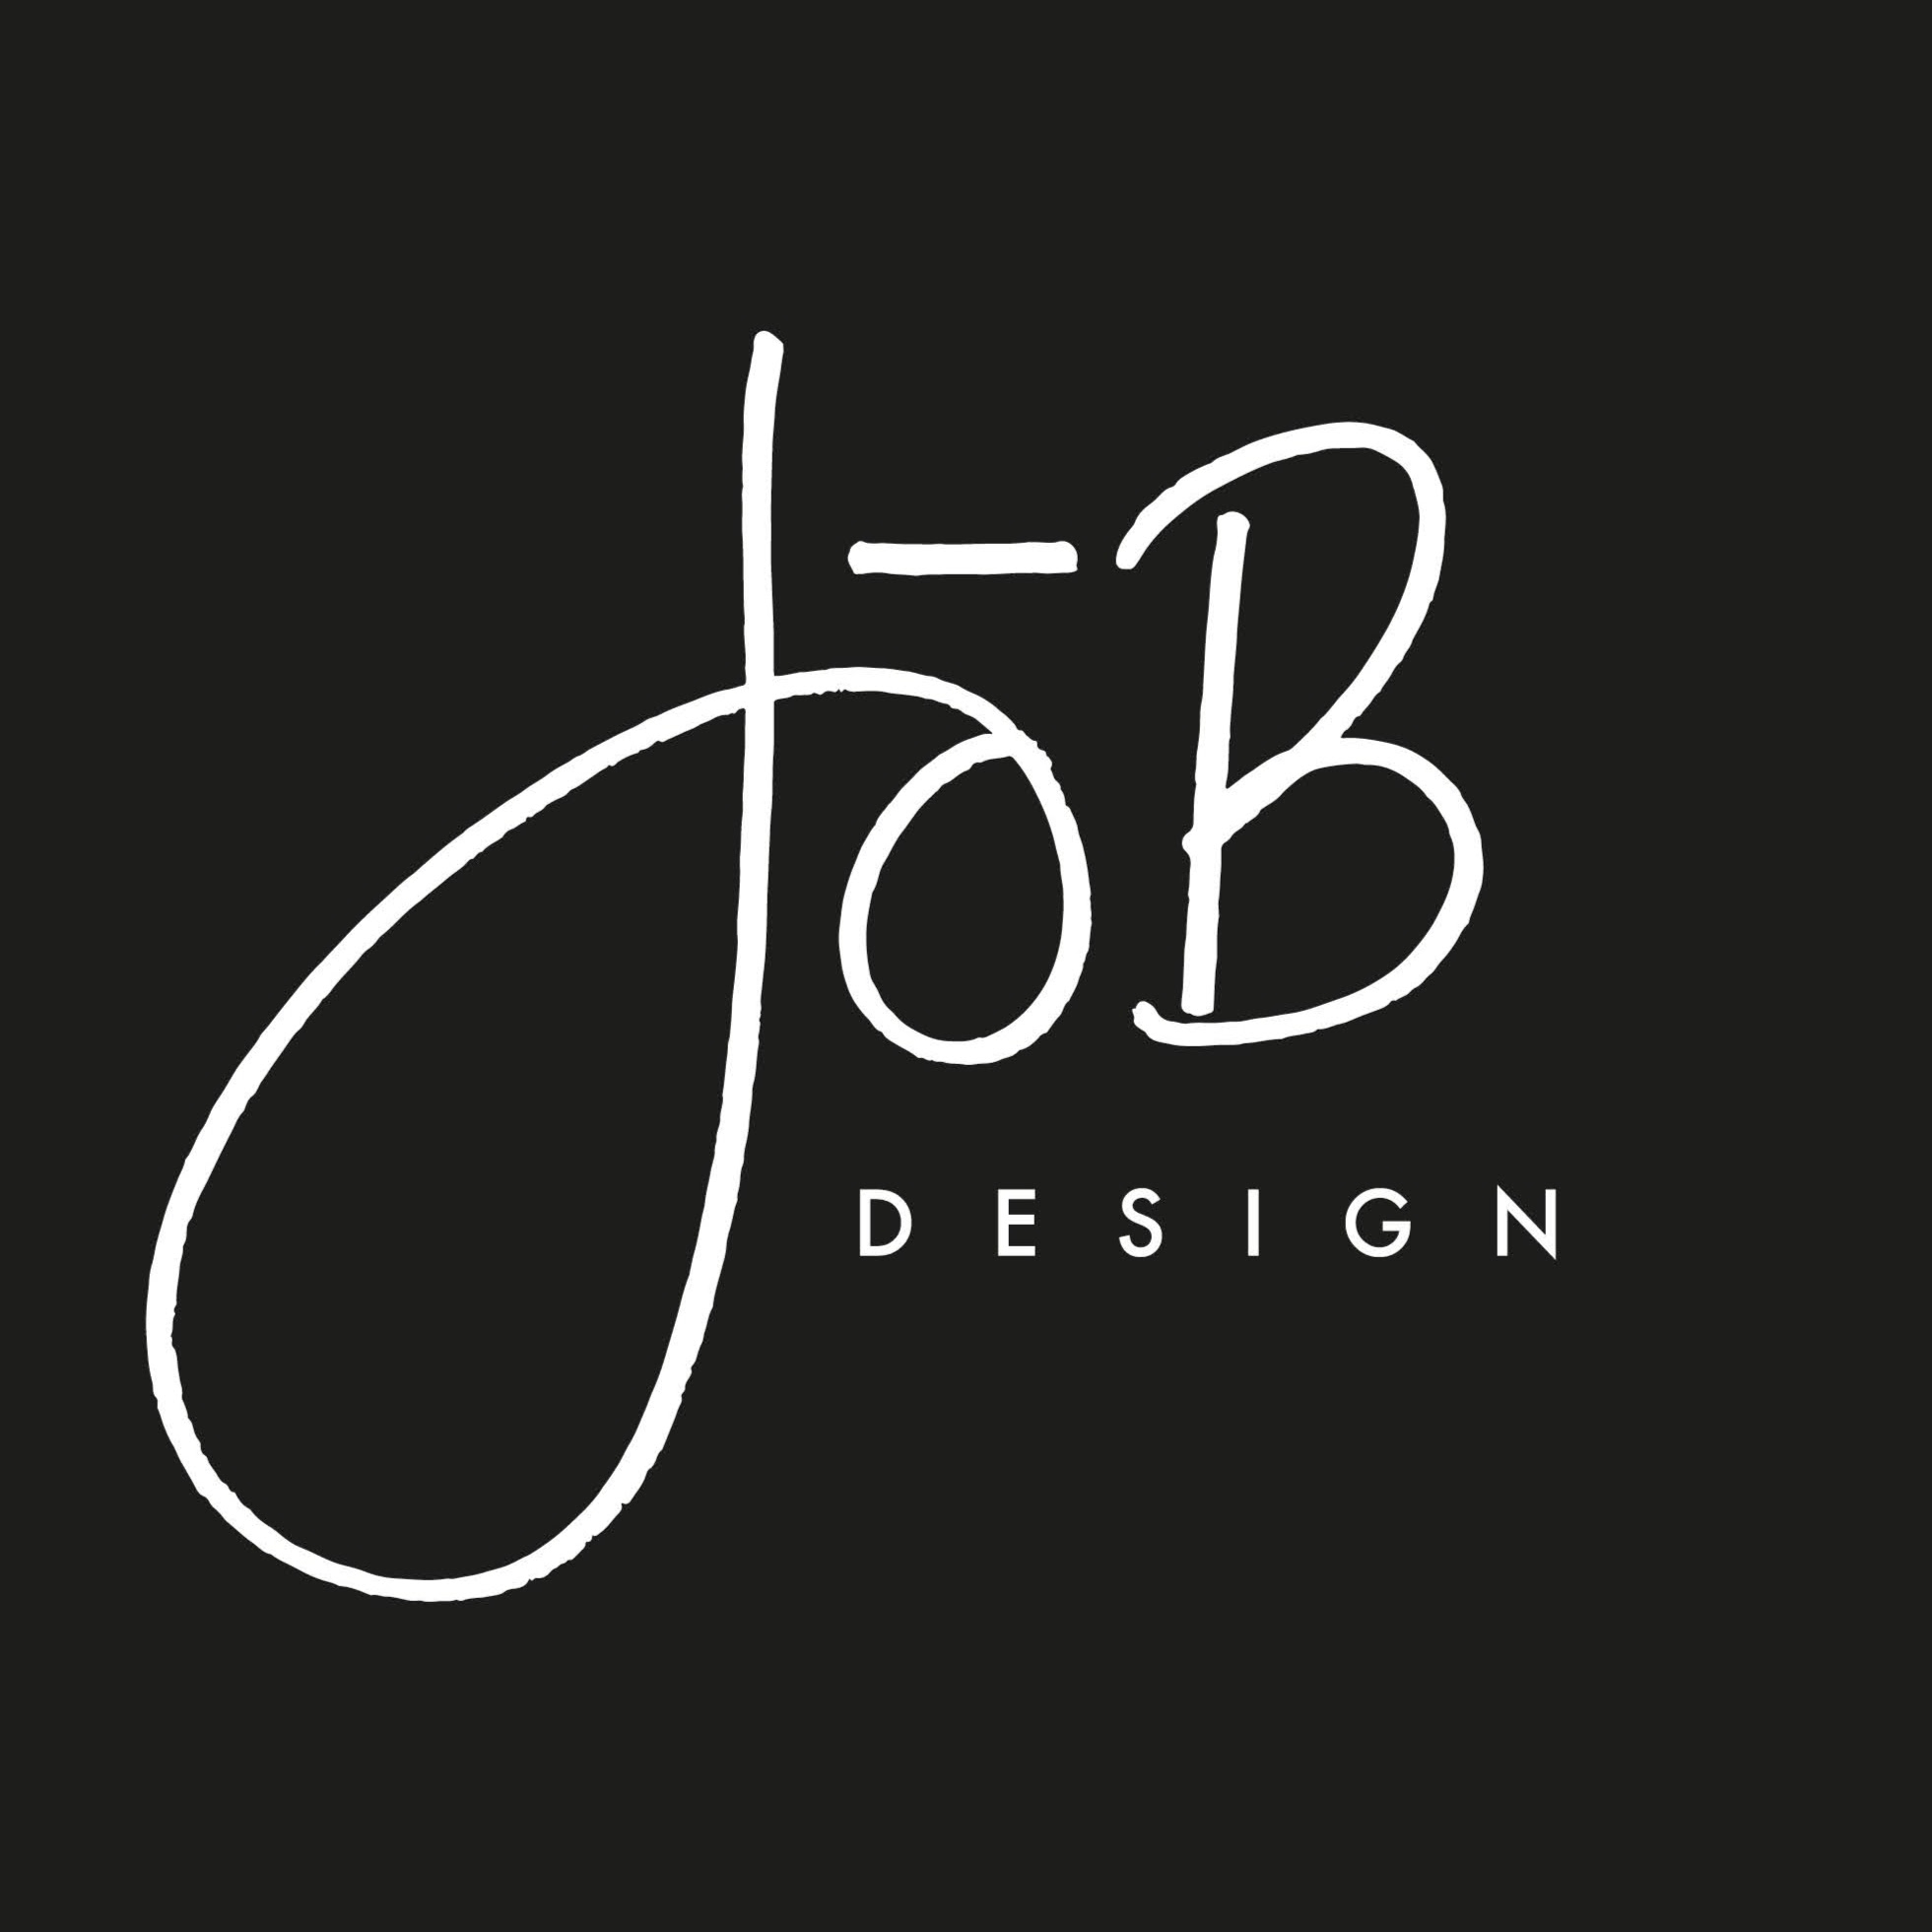 JoB Design - Interior Designers